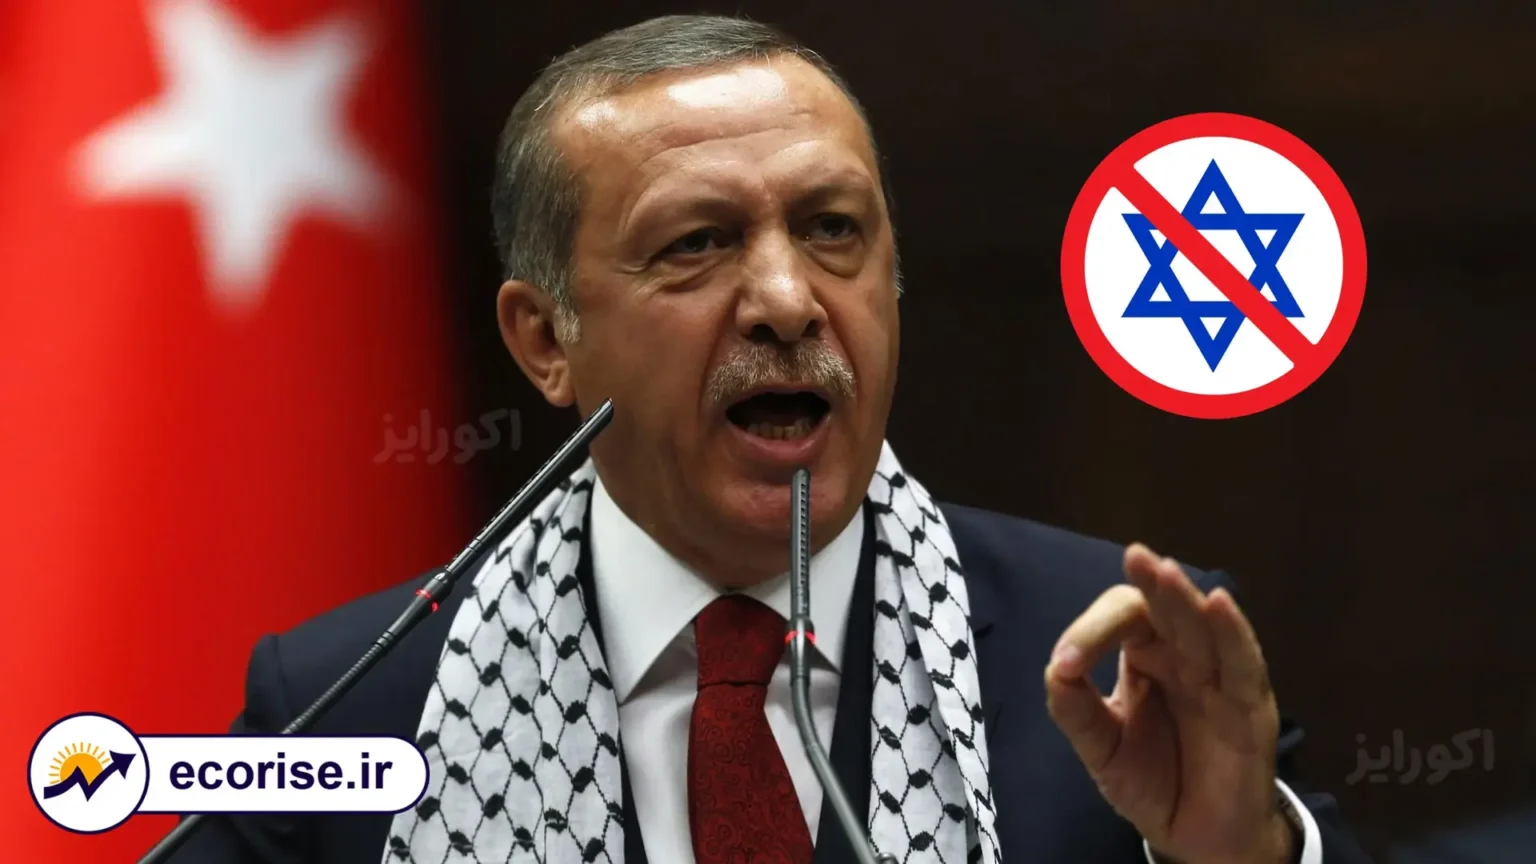 قطع رابطه اقتصادی ترکیه و اسرائیل - رجب طیب اردوغان با چفیه